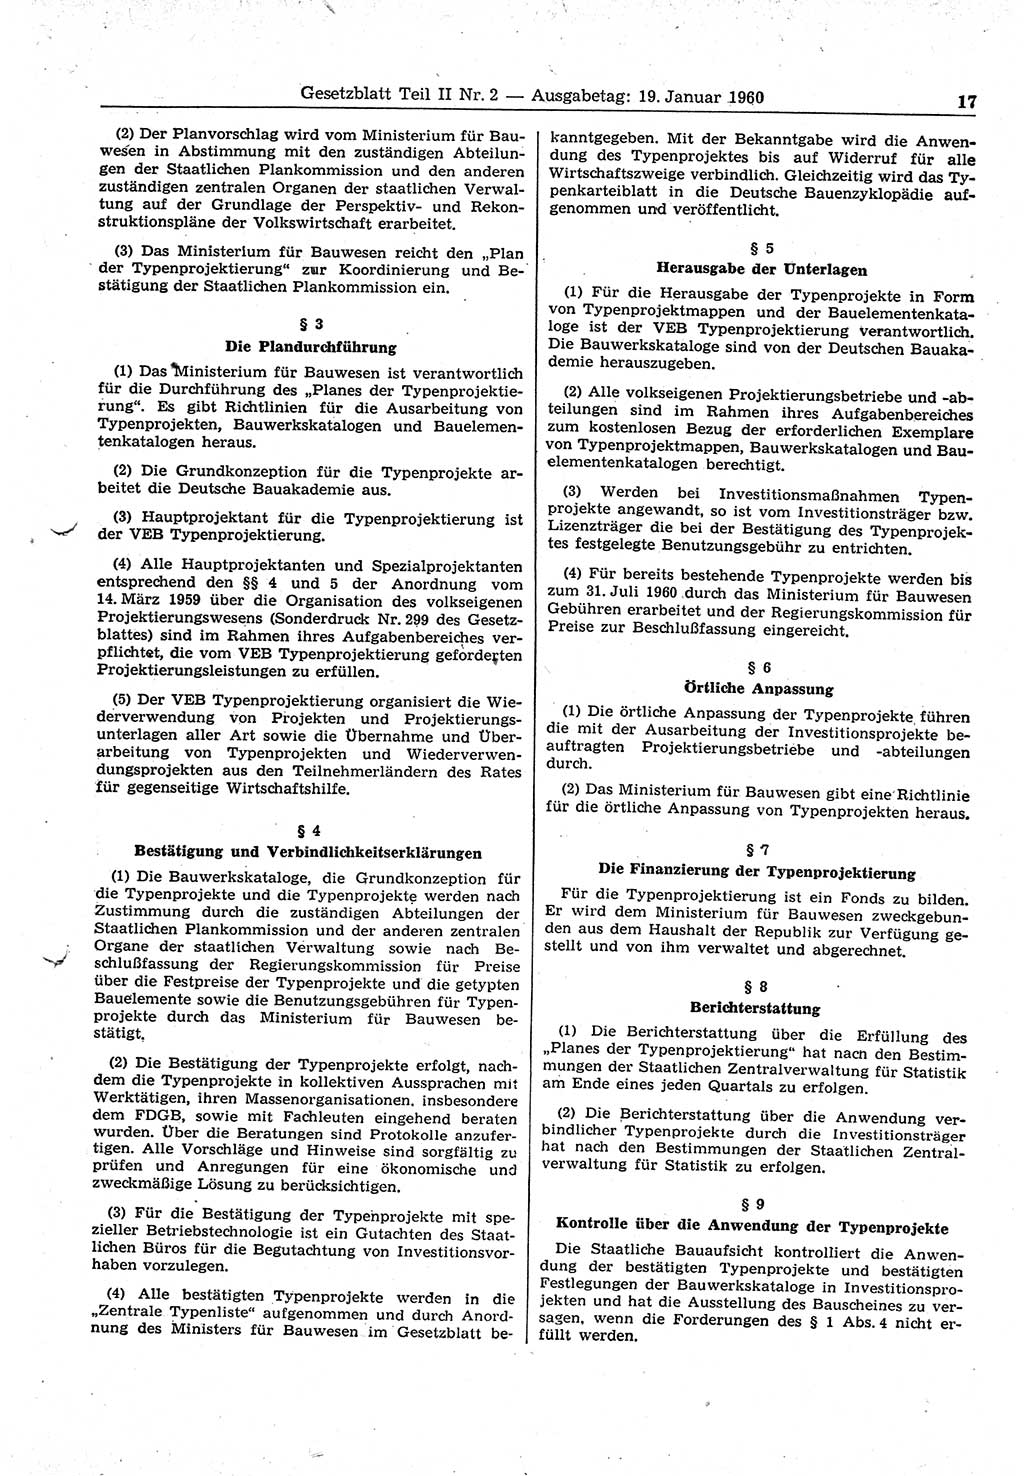 Gesetzblatt (GBl.) der Deutschen Demokratischen Republik (DDR) Teil ⅠⅠ 1960, Seite 17 (GBl. DDR ⅠⅠ 1960, S. 17)